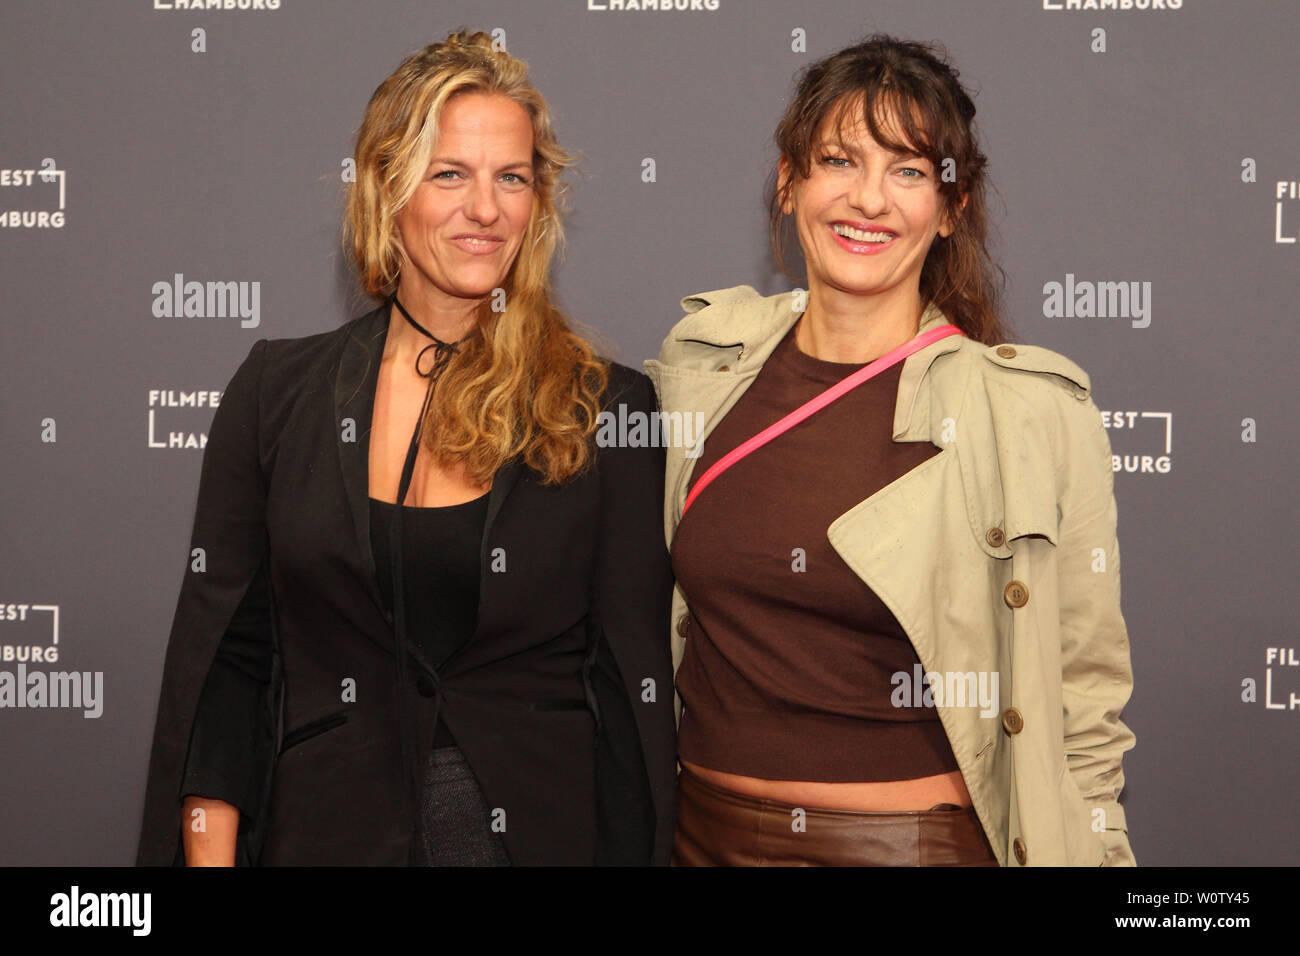 Janna und Catrin Striebeck, Filmfest Hamburg, 04.10.2018 Stockfoto